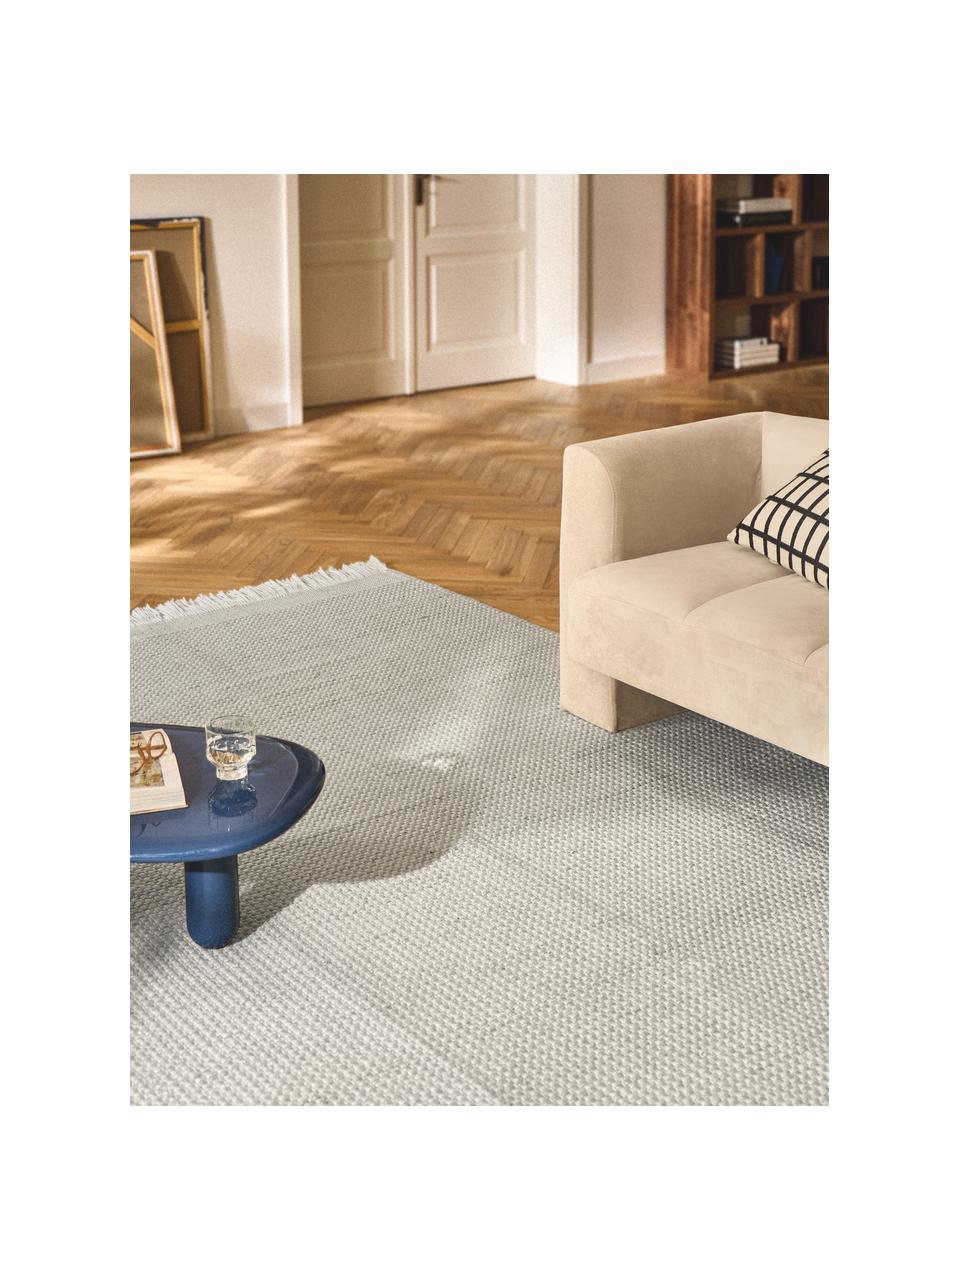 Naplocho tkaný koberec s třásněmi Ryder, 100 % polyester, certifikace GRS, Světle šedá, bílá, Š 120 cm, D 180 cm (velikost S)